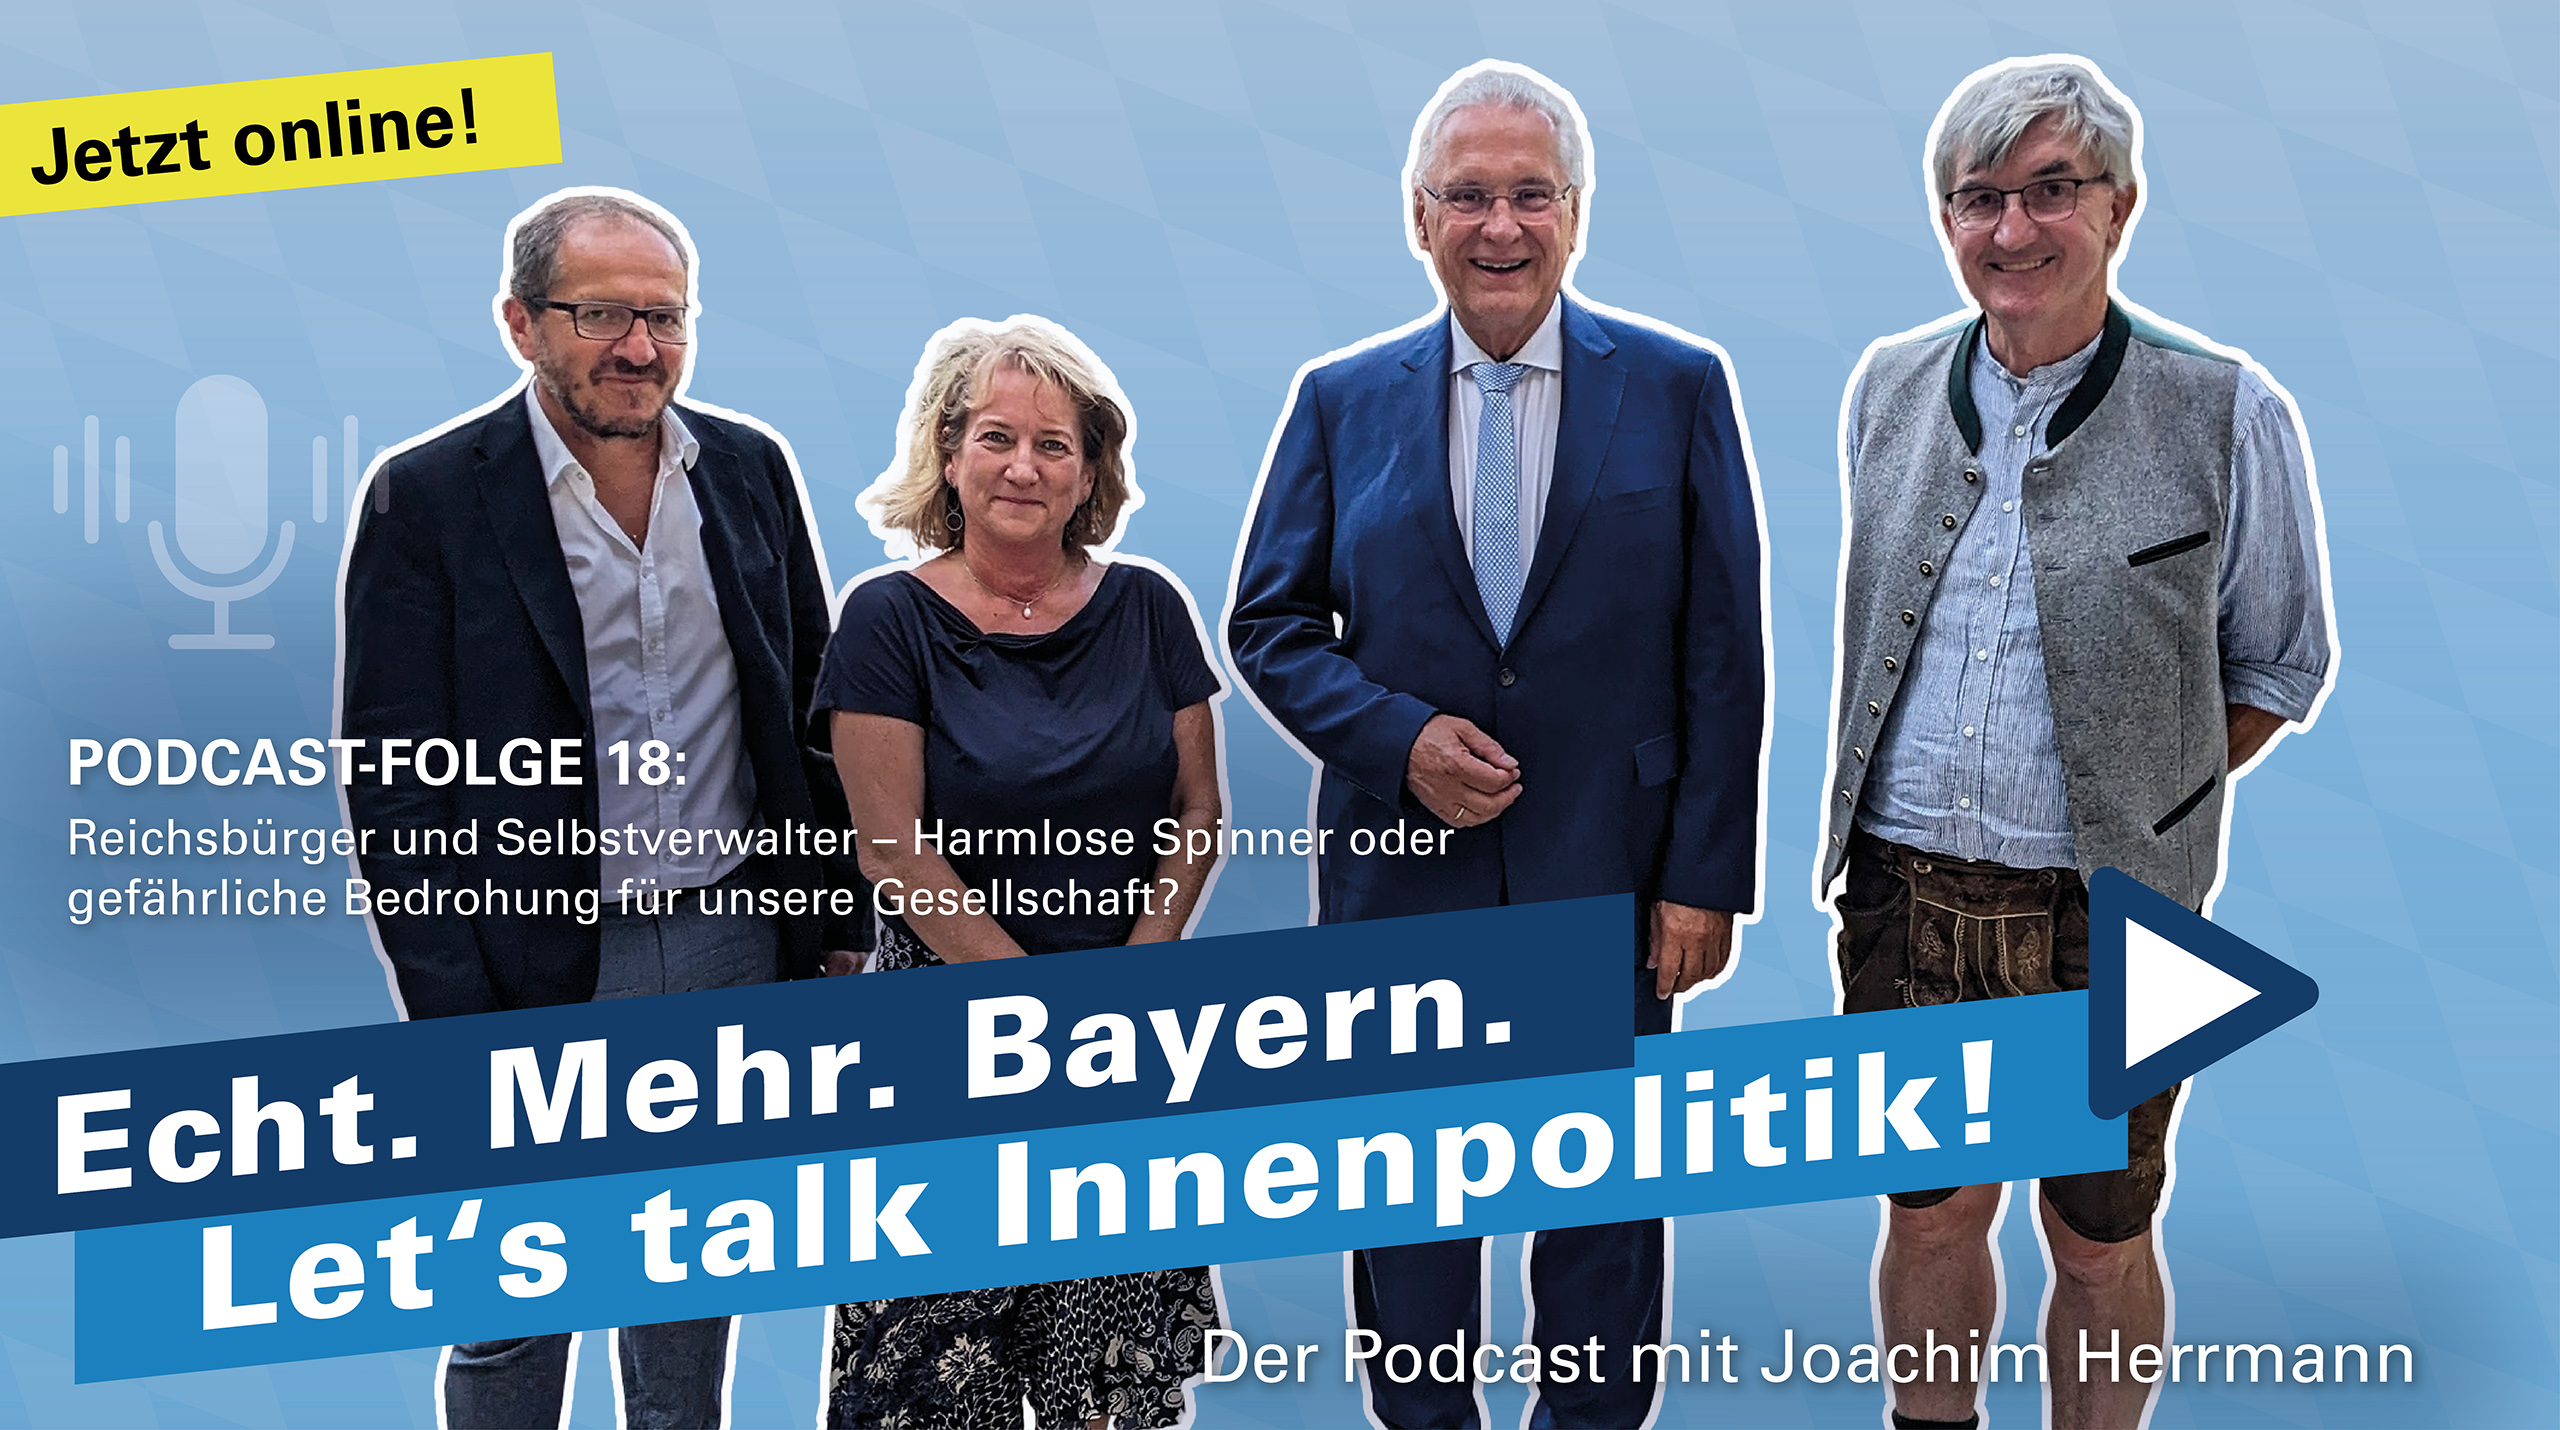 Neue Podcast-Folge 18: "Reichsbürger und Selbstverwalter – Harmlose Spinner oder gefährliche Bedrohung für unsere Gesellschaft?“ - Der Podcast mit Joachim Herrmann